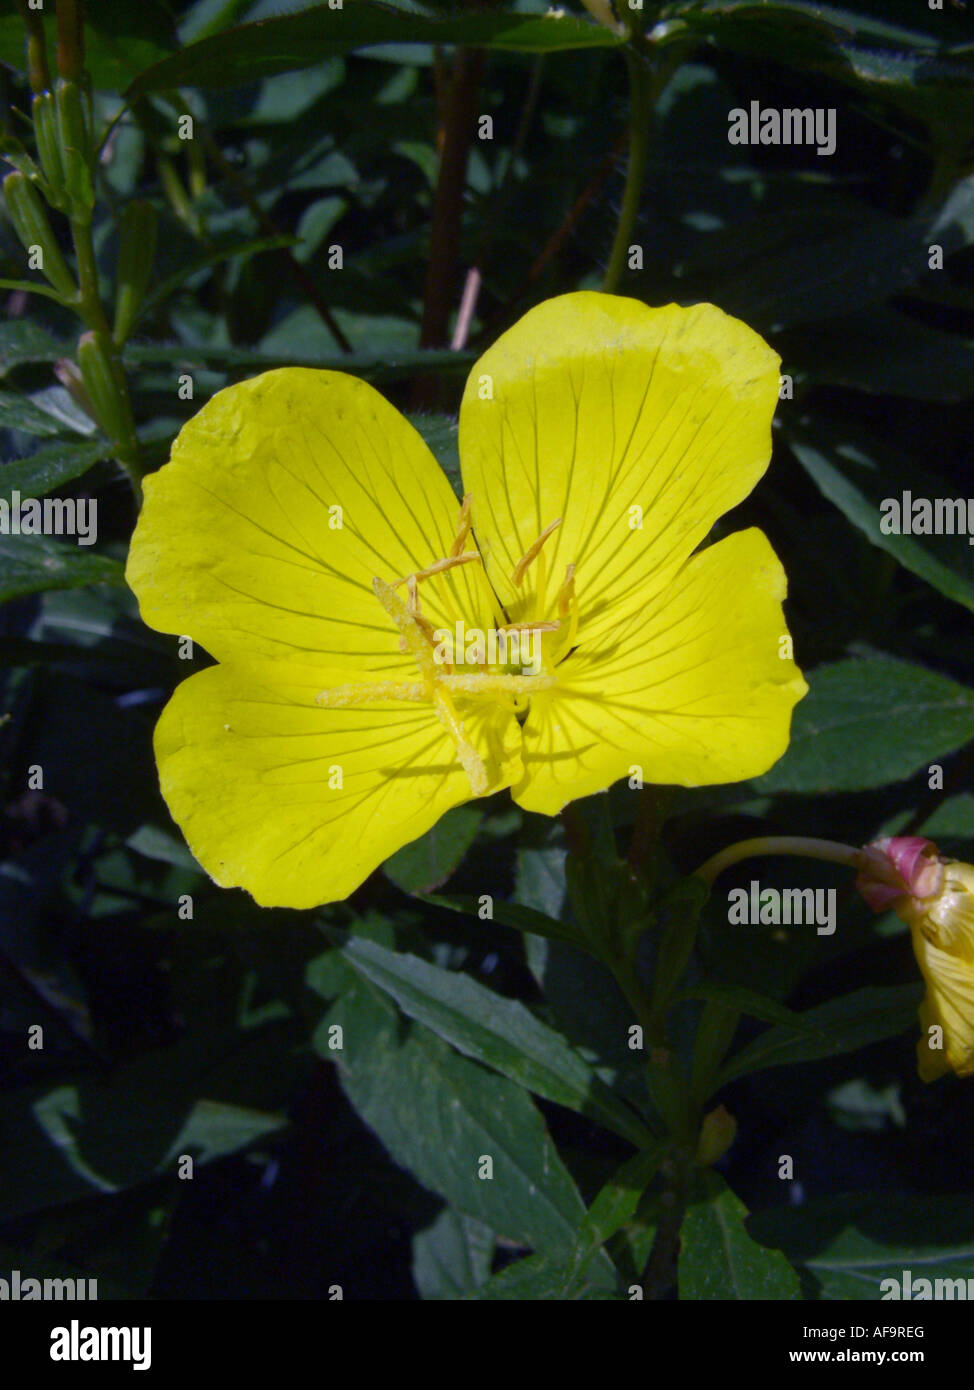 Sundrops, Narrow-leaved sundrops, Golden sundrops, Narrowleaf evening-primrose, Shrubby sundrop (Oenothera fruticosa, Oenothera Stock Photo